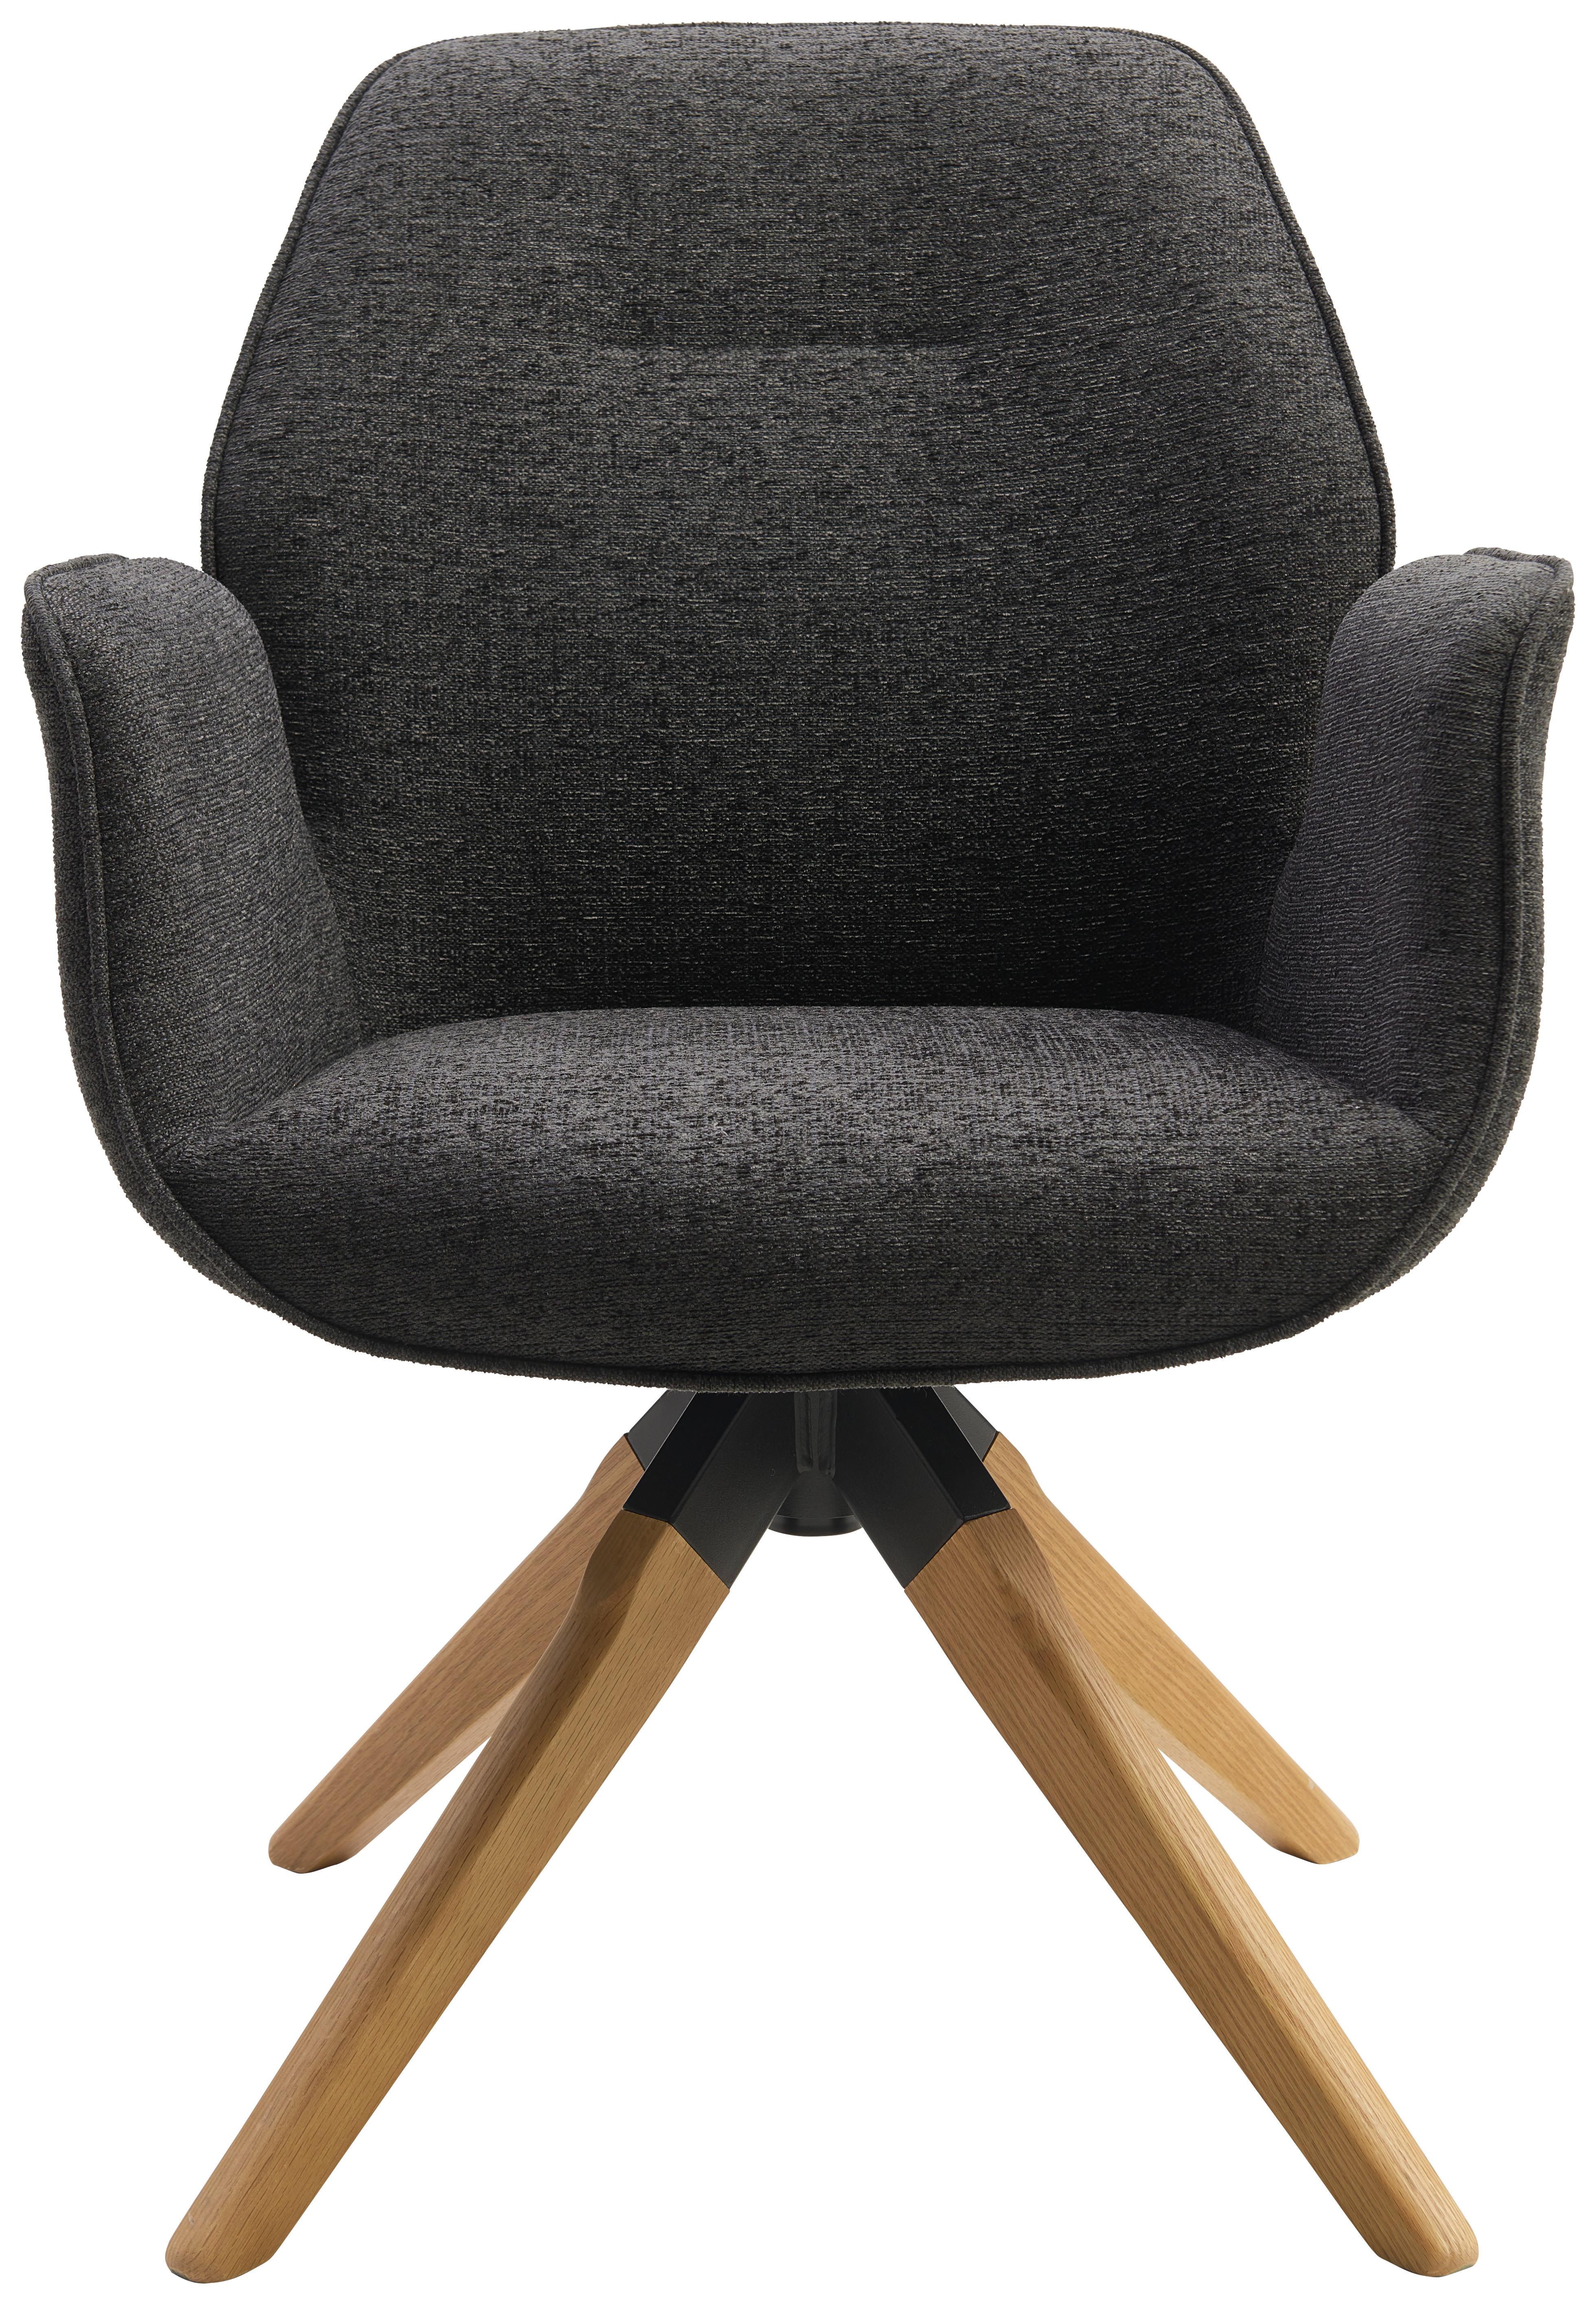 Armlehnstuhl Savona Anthrazit mit Drehbarer Sitzfläche - Anthrazit/Naturfarben, MODERN, Holz/Textil (61/91/59cm) - MID.YOU